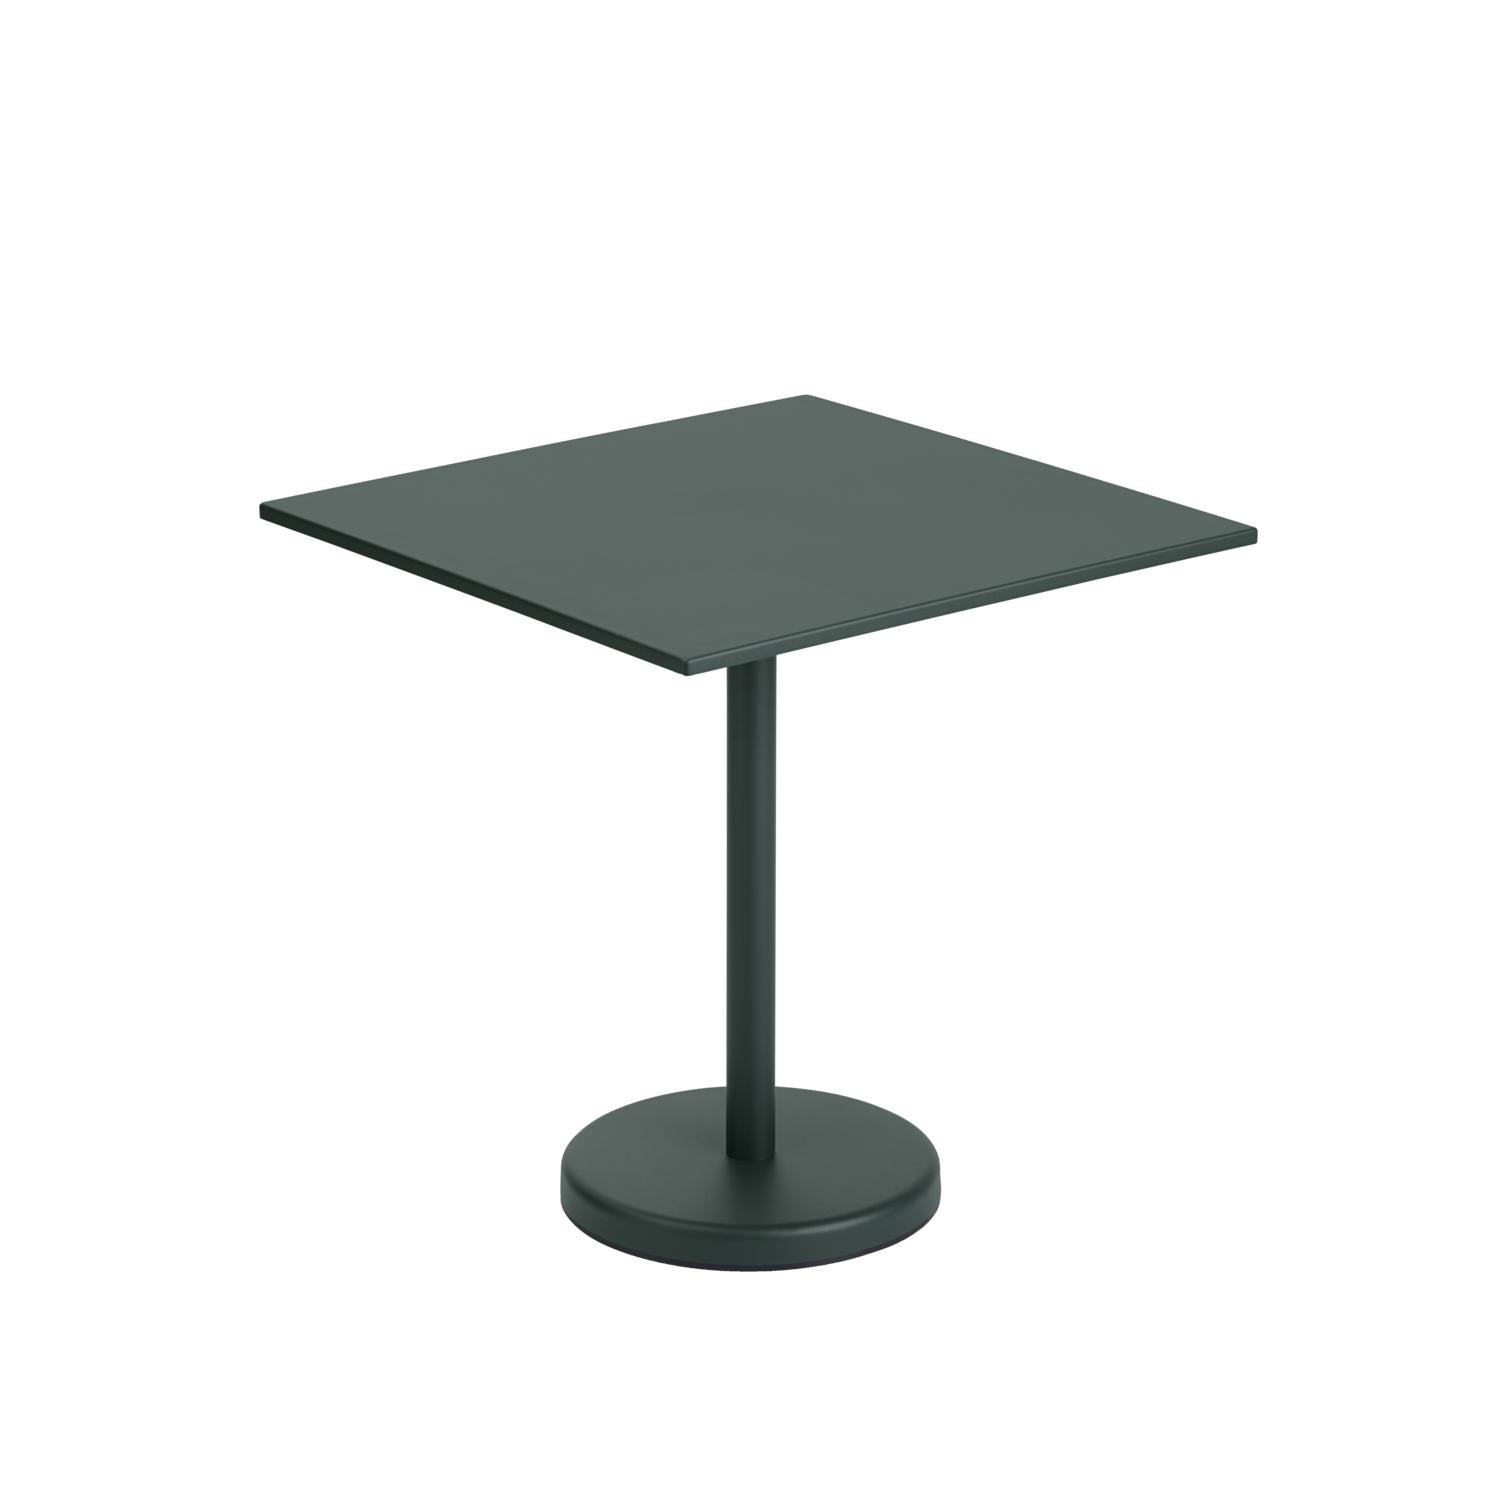 Muuto Linear Stahl Café Tabelle 70 x70 cm, dunkelgrün